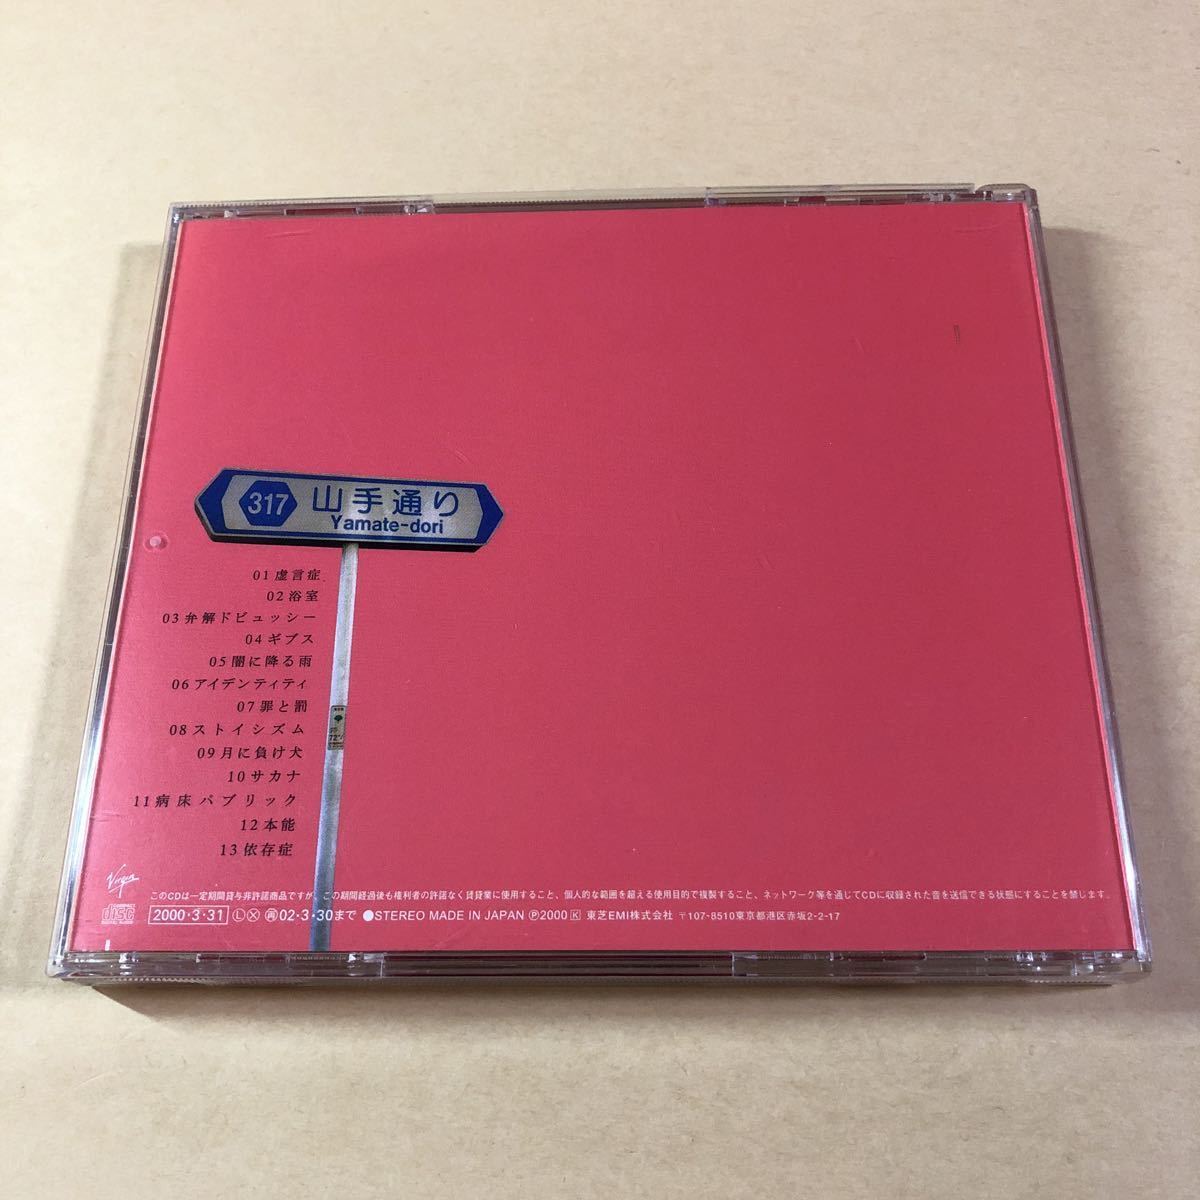 椎名林檎 1CD「勝訴ストリップ」_画像2